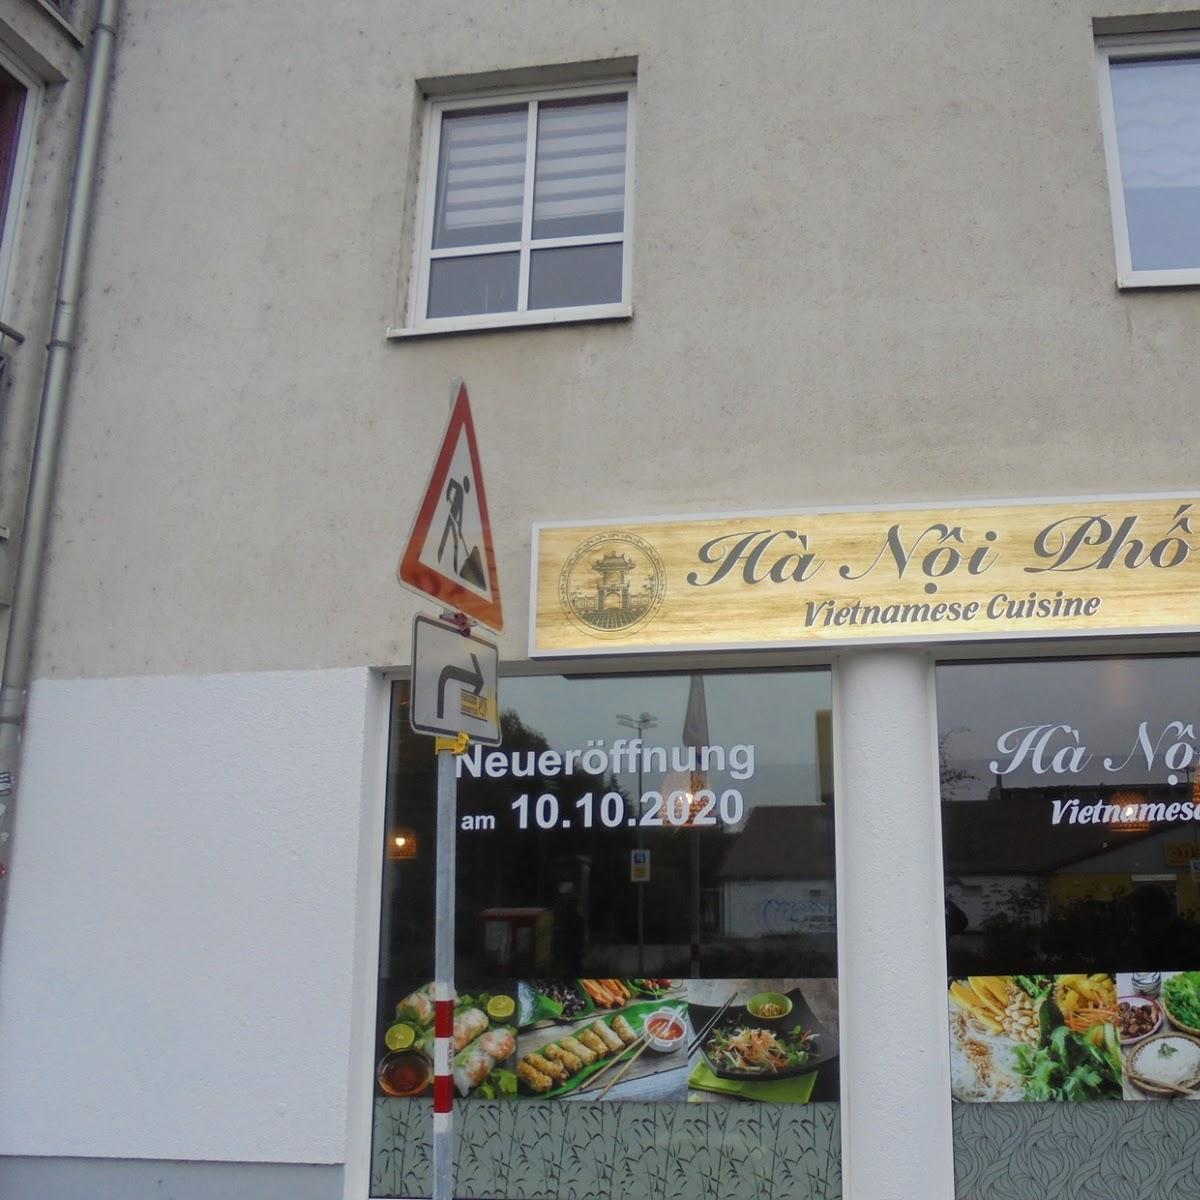 Restaurant "Ha Noi Pho" in Leipzig